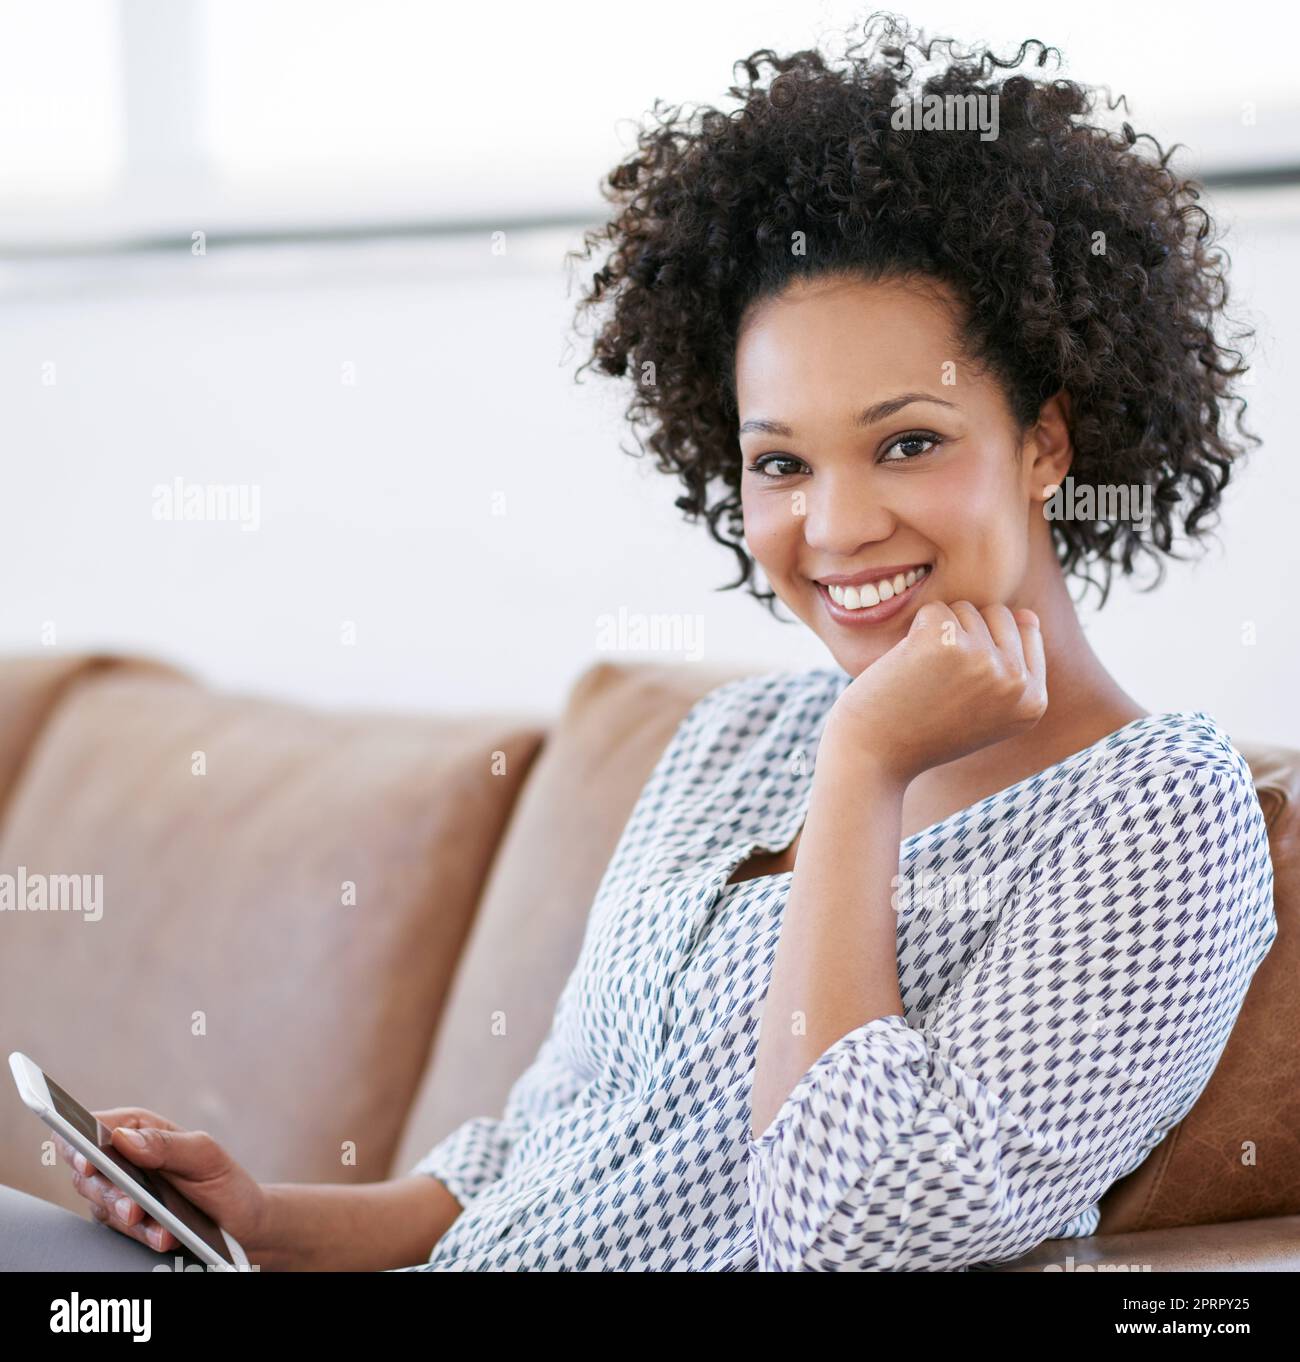 Nirgendwo entspannender als zu Hause. Porträt einer attraktiven Frau, die mit ihrem Smartphone auf dem Sofa sitzt. Stockfoto